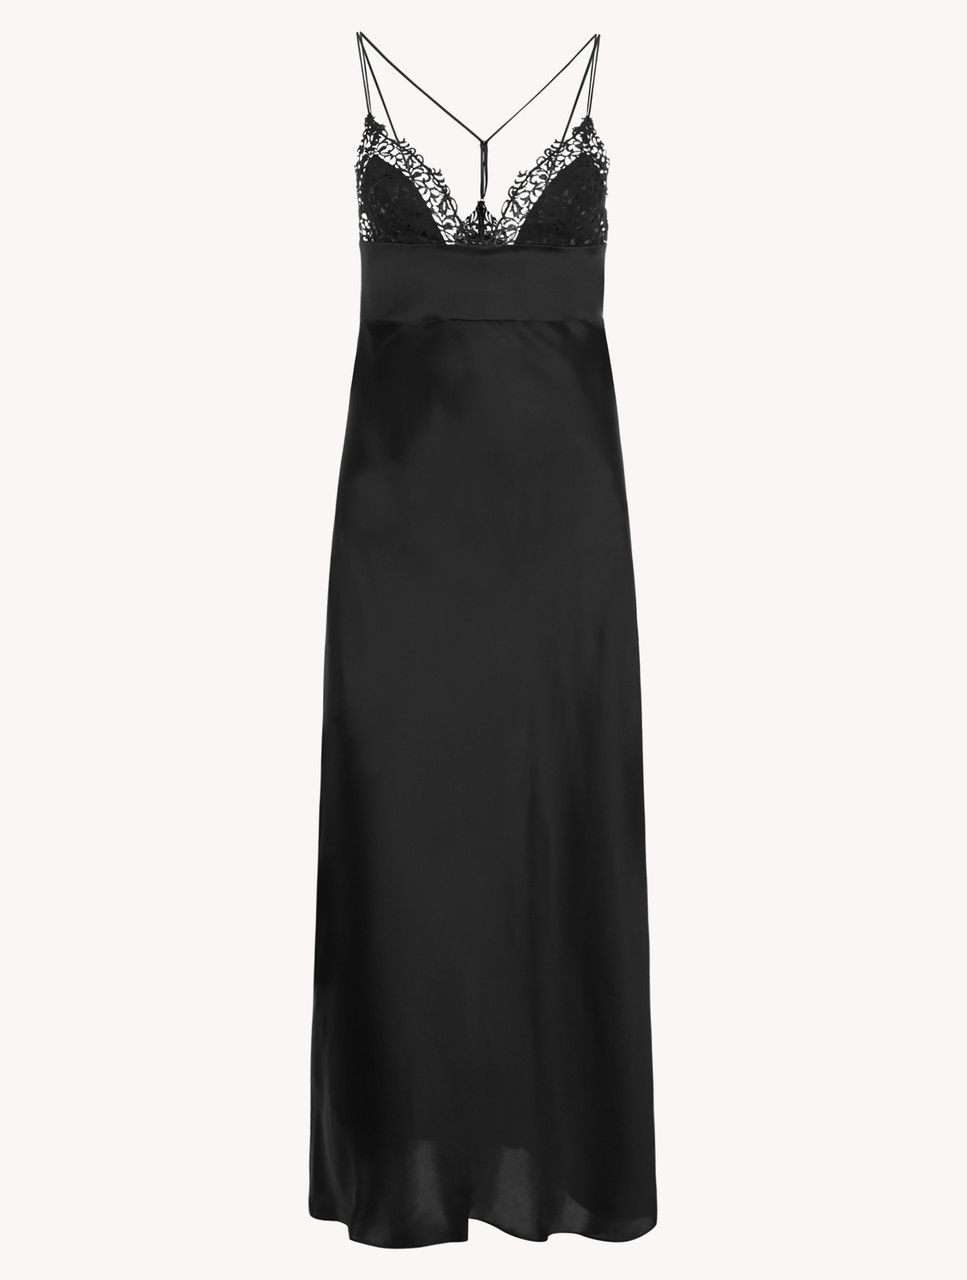 ブラック マクラメトリム ロングナイトドレス